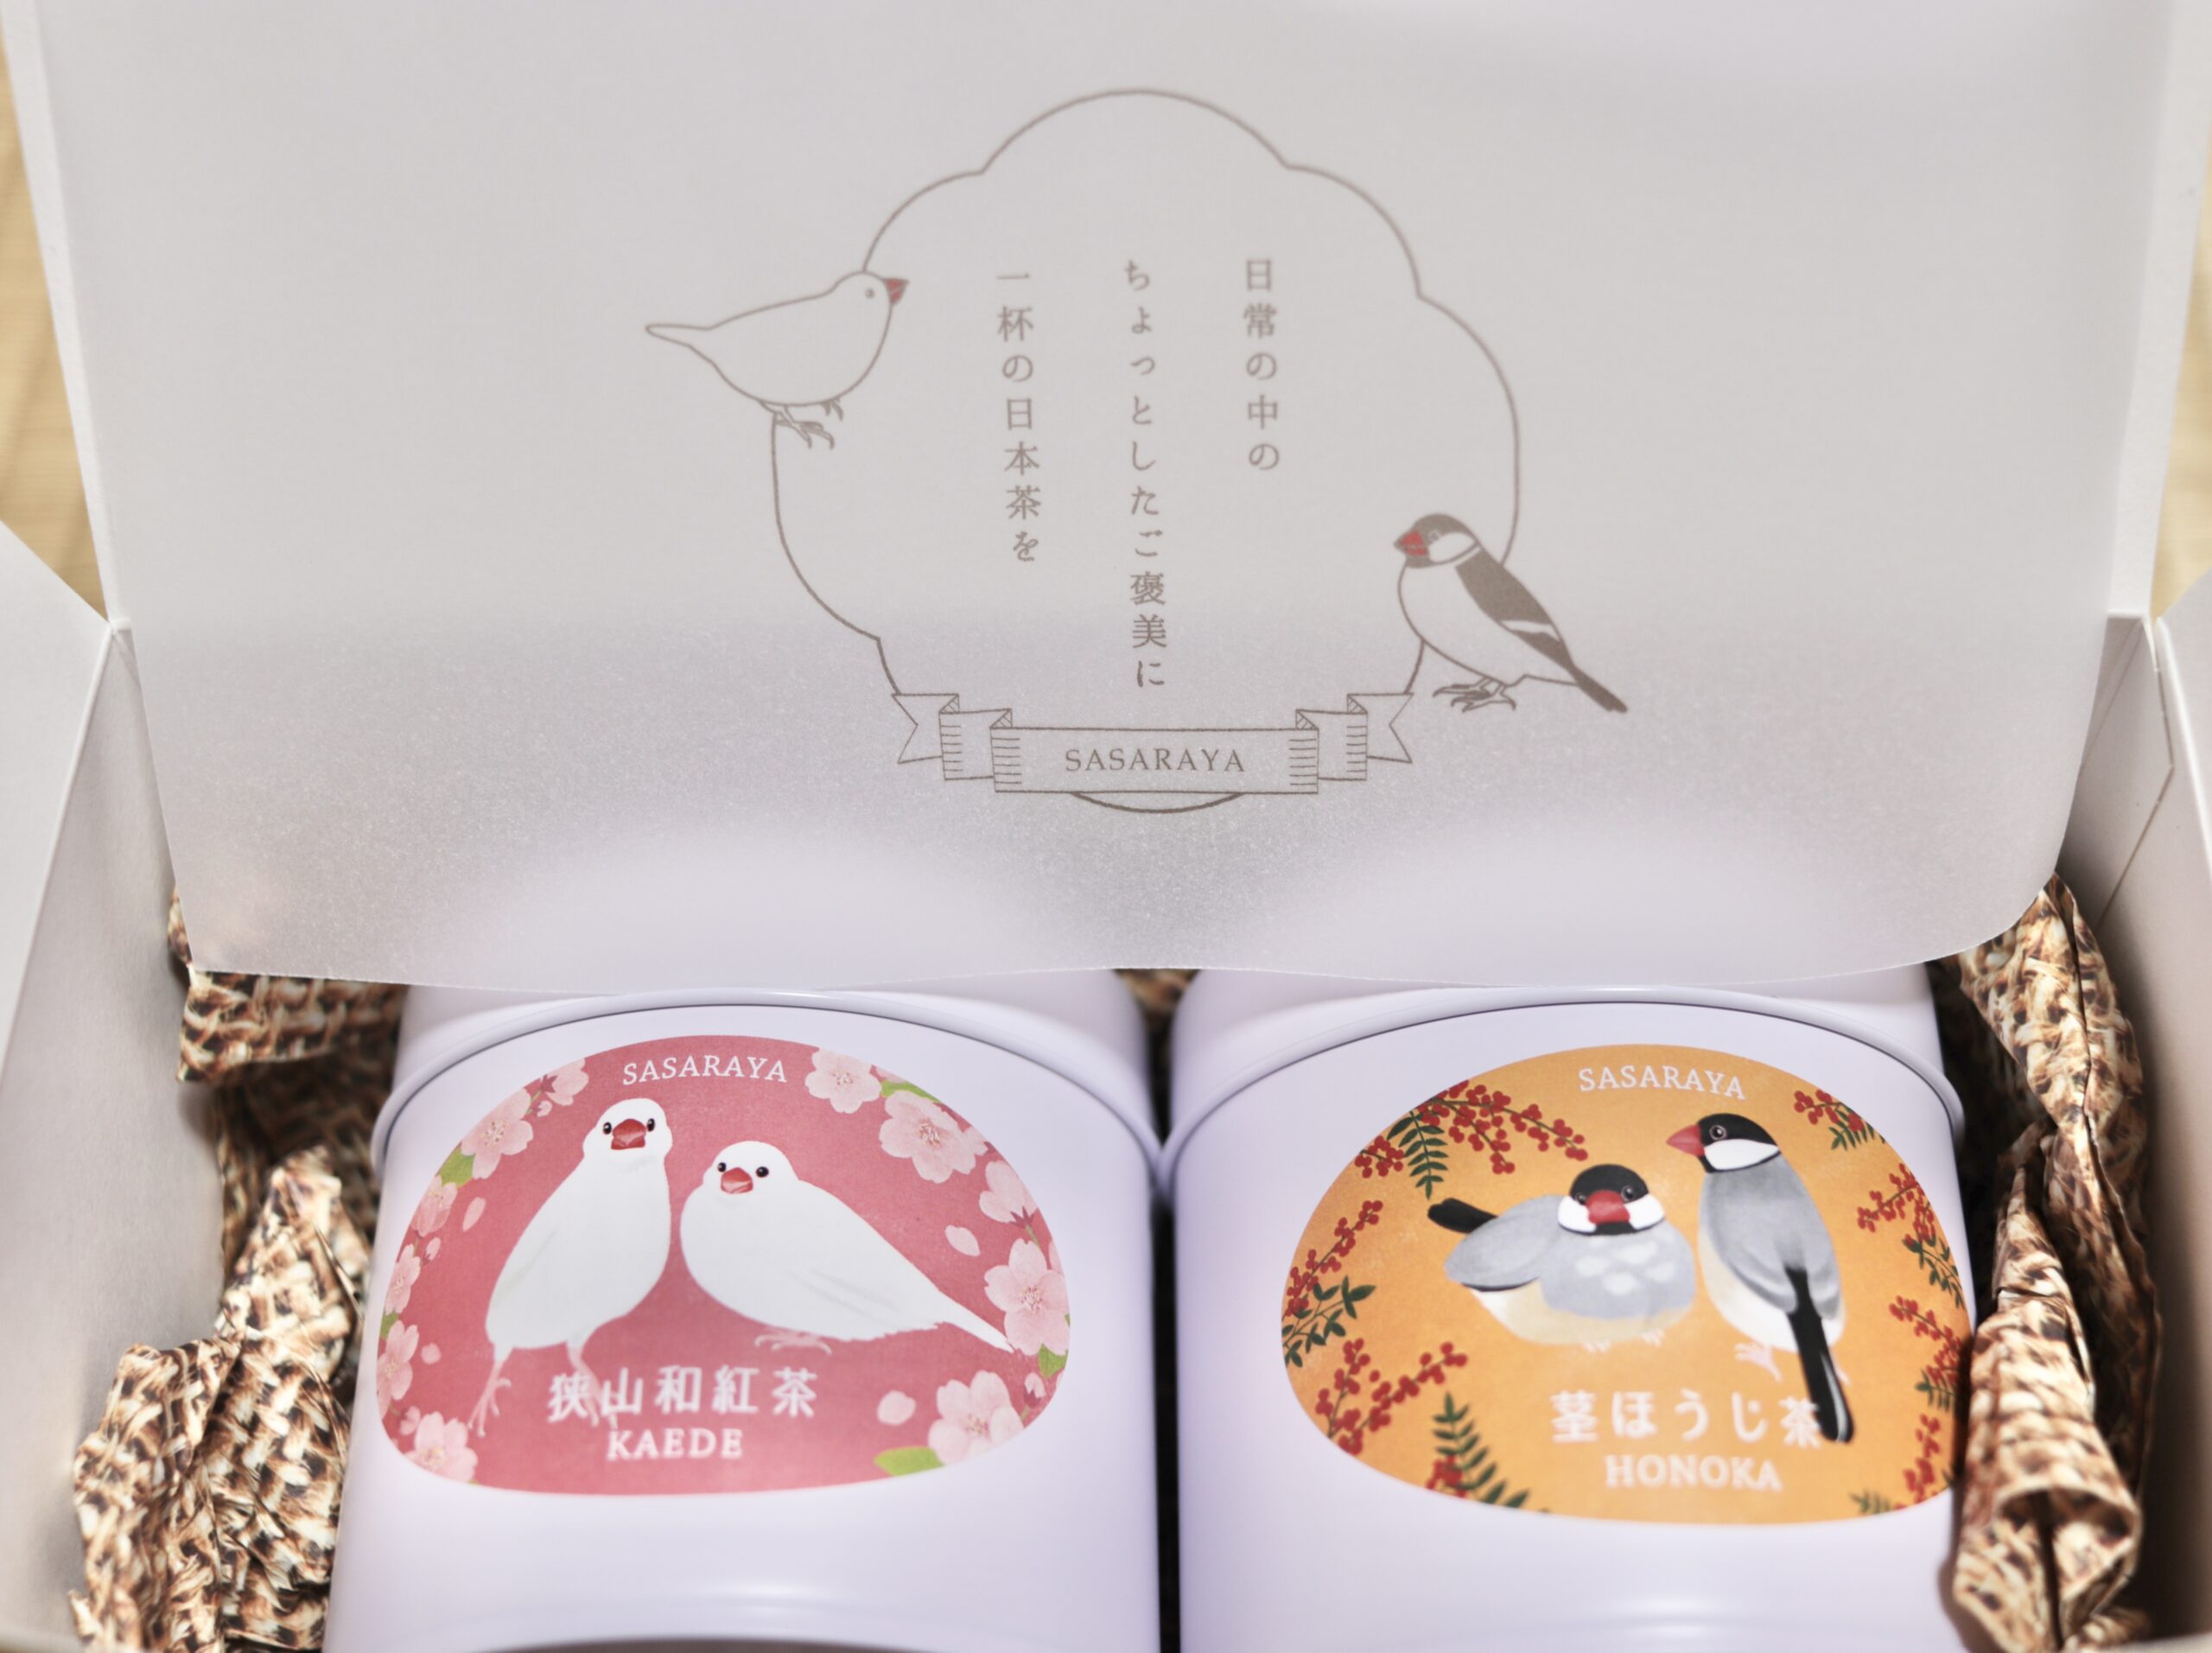 埼玉のお茶の名産地 狭山茶農家 ささら屋 の鳥のイラスト付きの可愛いお茶をいろいろお取り寄せしてみた Chikudays